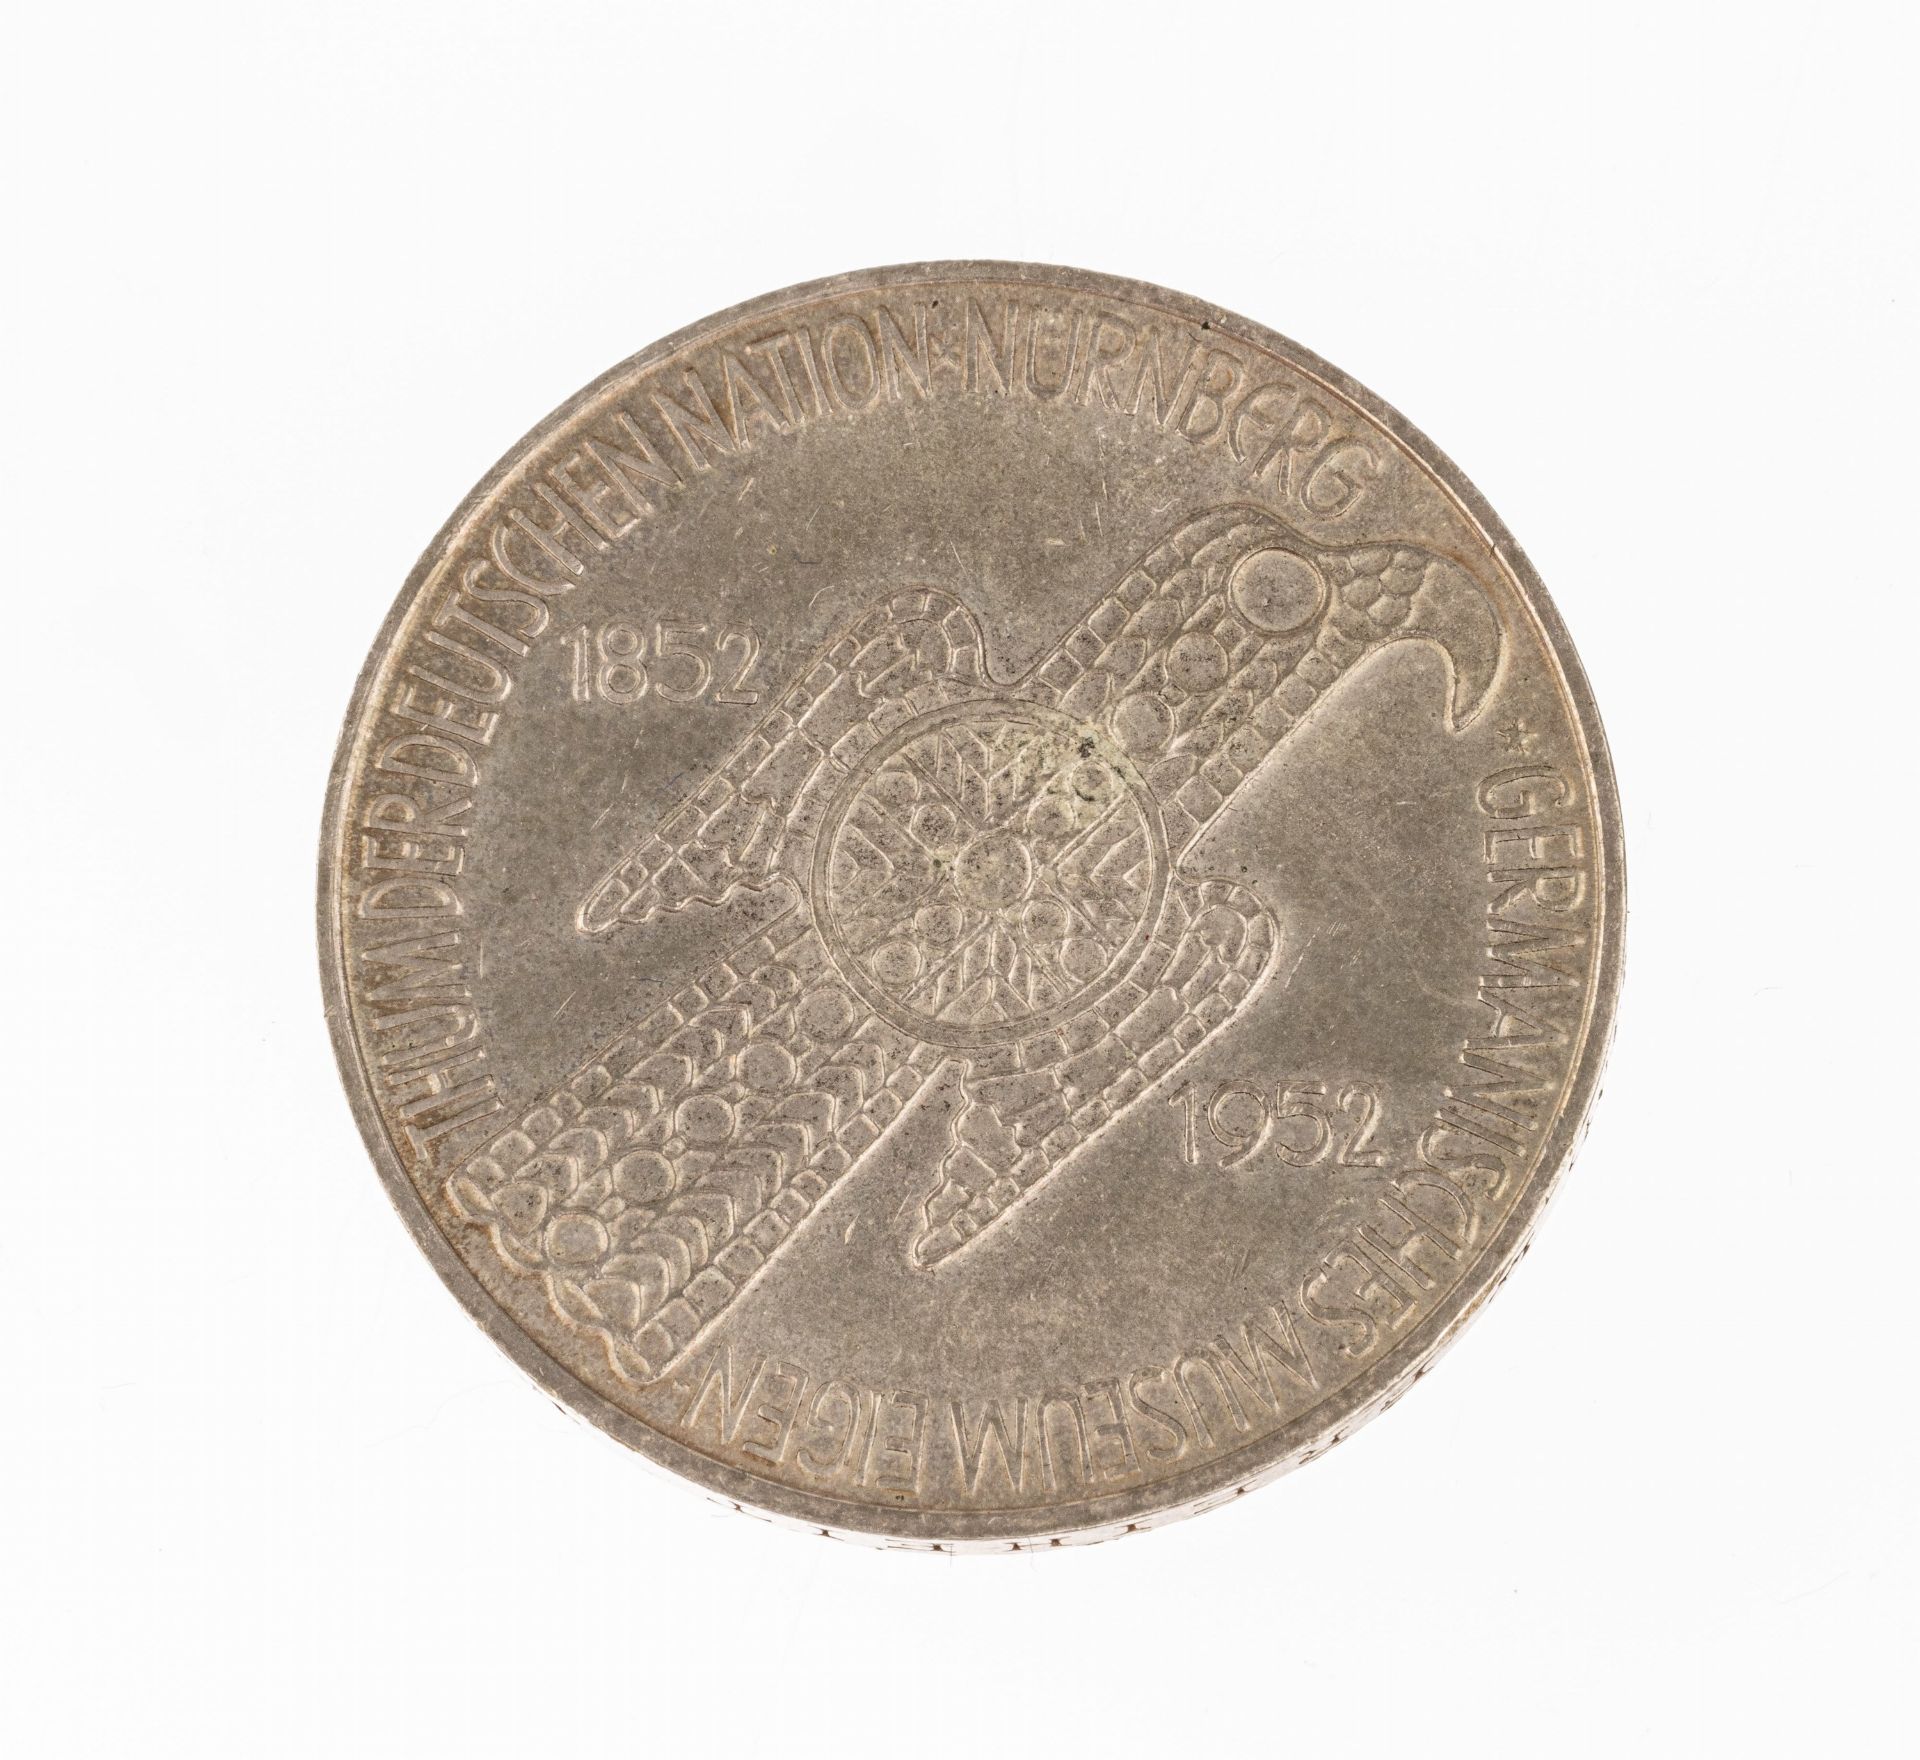 Silbermünze 5 Mark, Deutschland, 1952, Germanisches